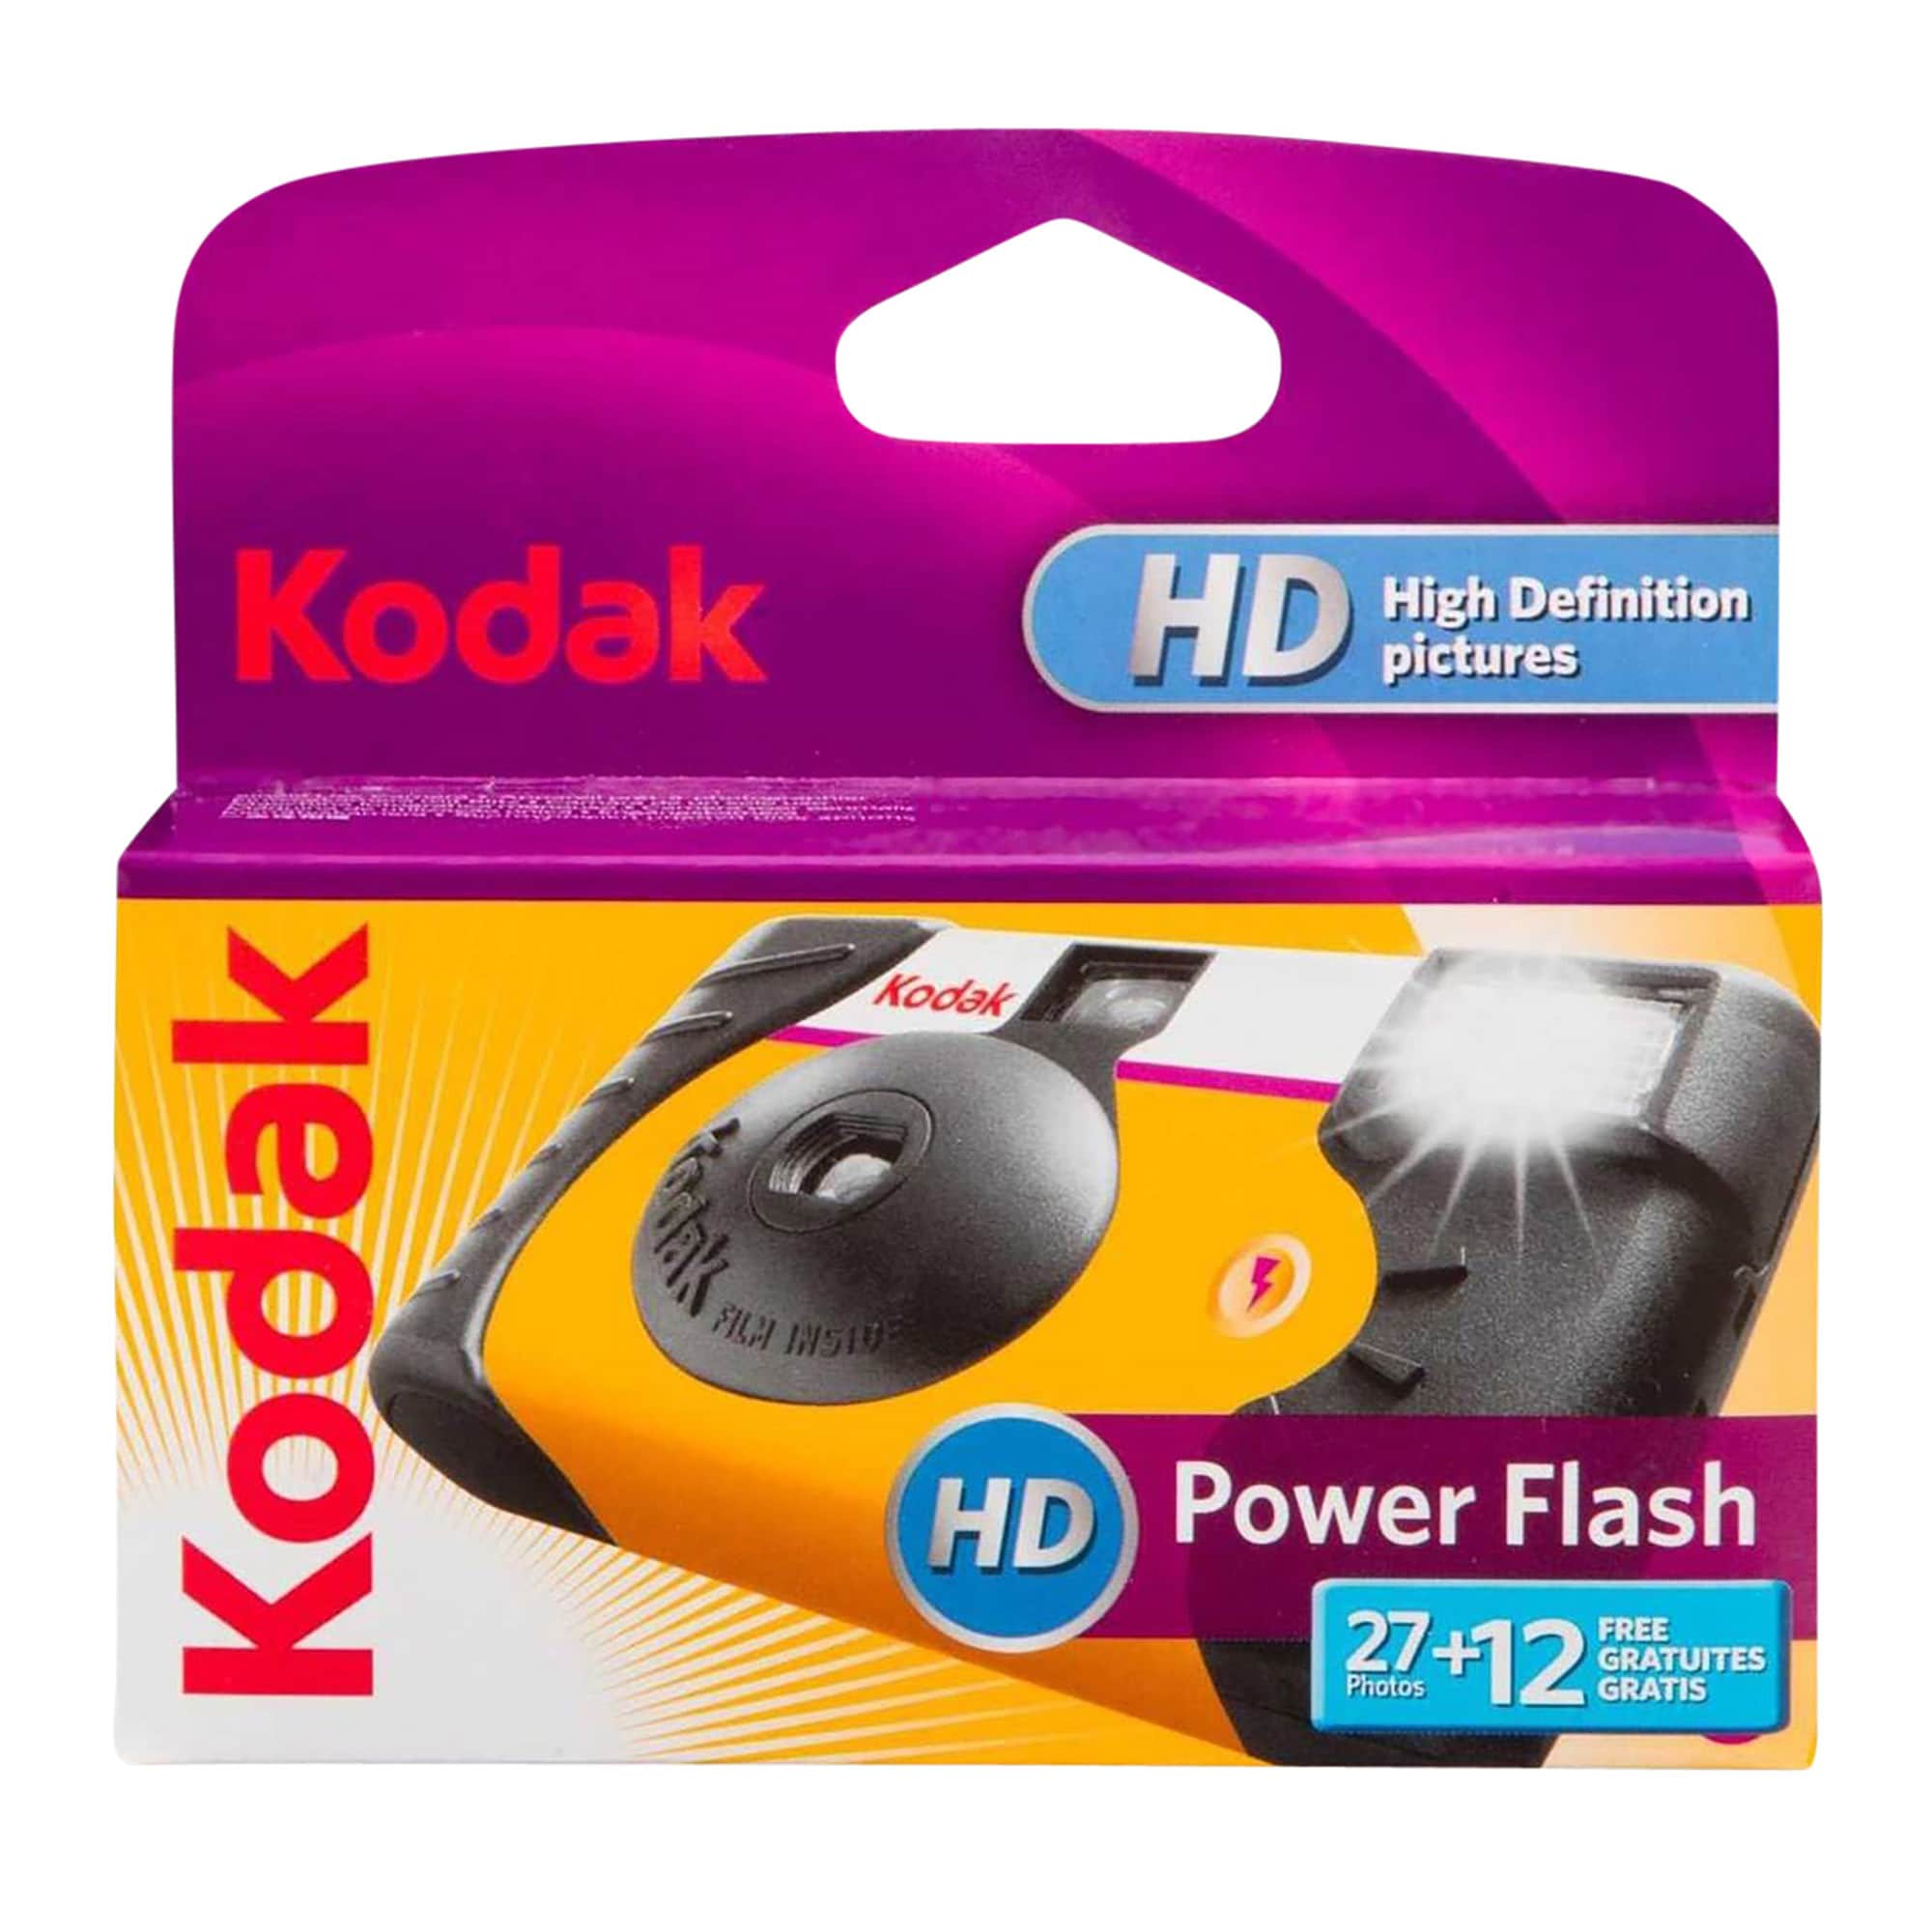 Kodak Power Flash 2712 Engangskamera - Elkjøp